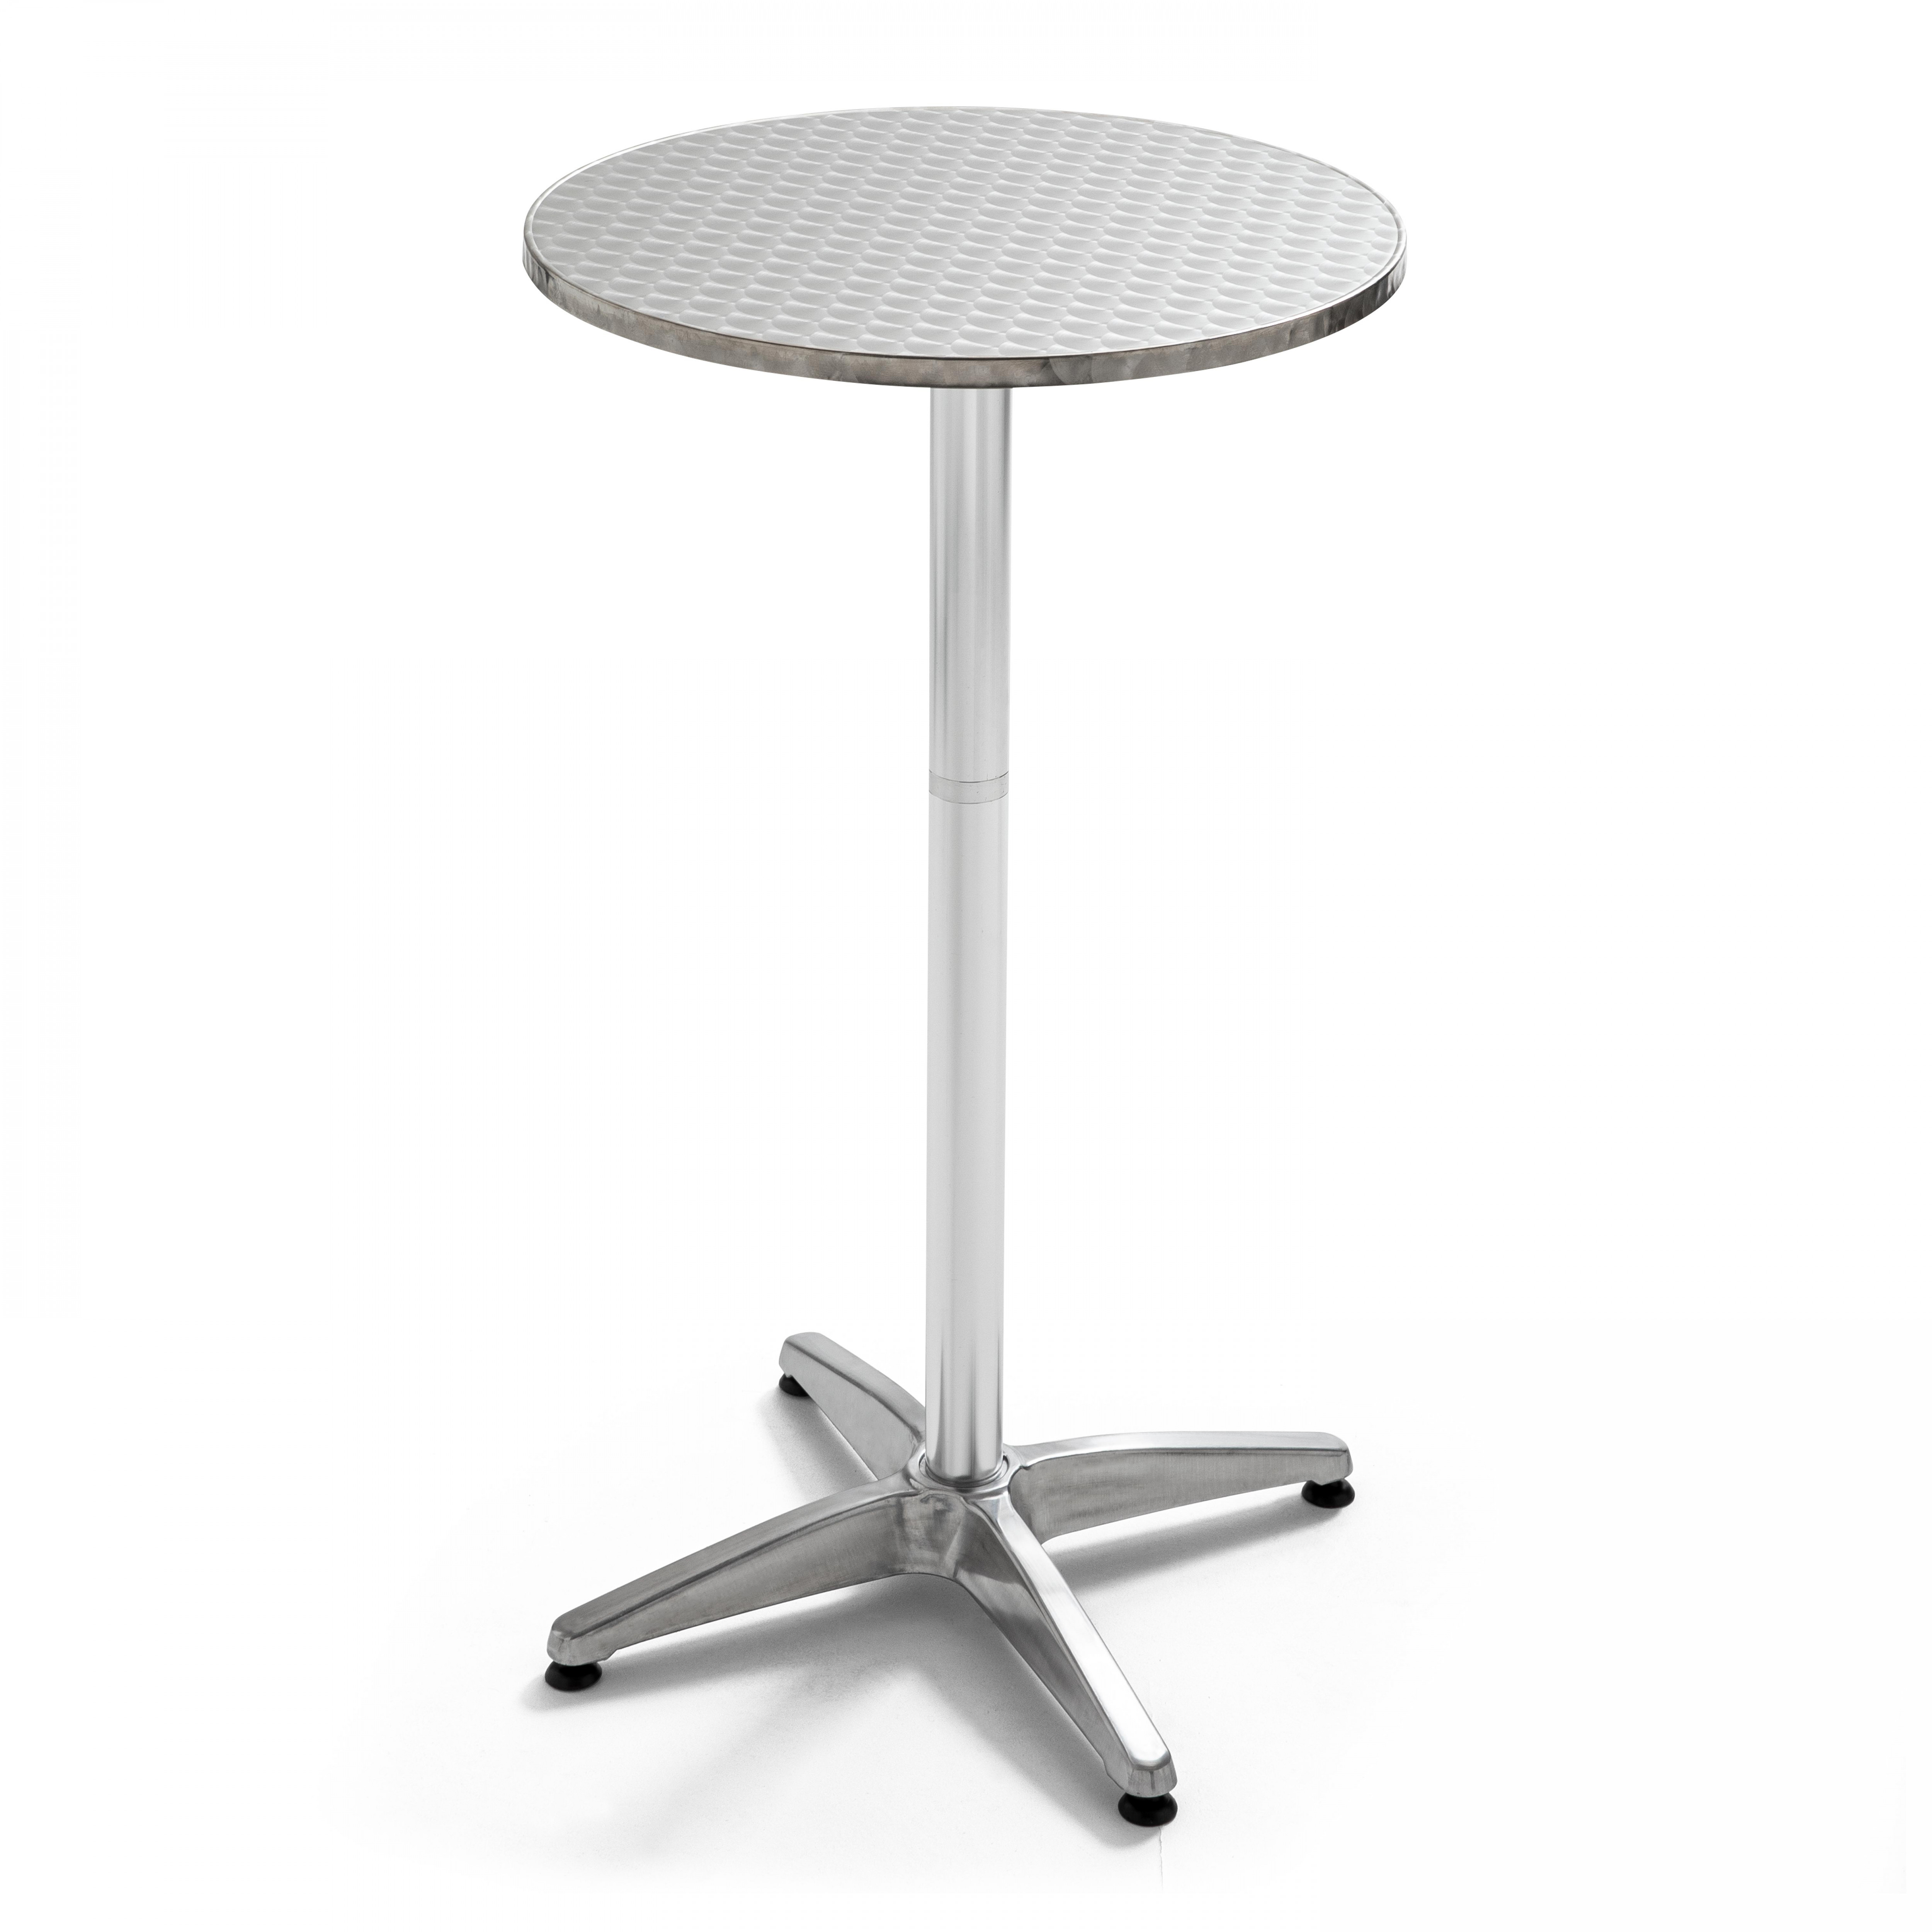 Table haute mange debout (Ø60 x 110 cm) carrée en aluminium